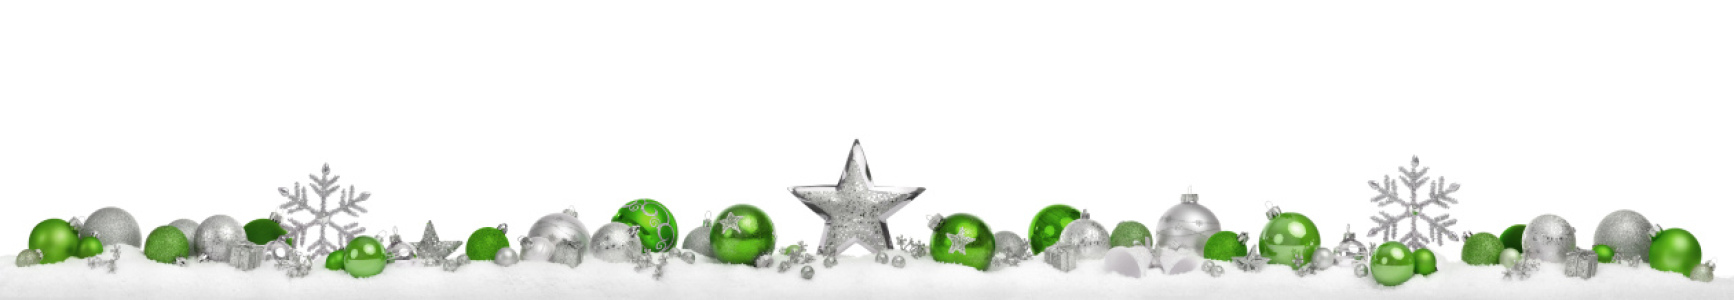 Bild-Nr: 12507827 Weihnachtsbanner mit Kugeln und Sternen auf weiß Erstellt von: Smileus